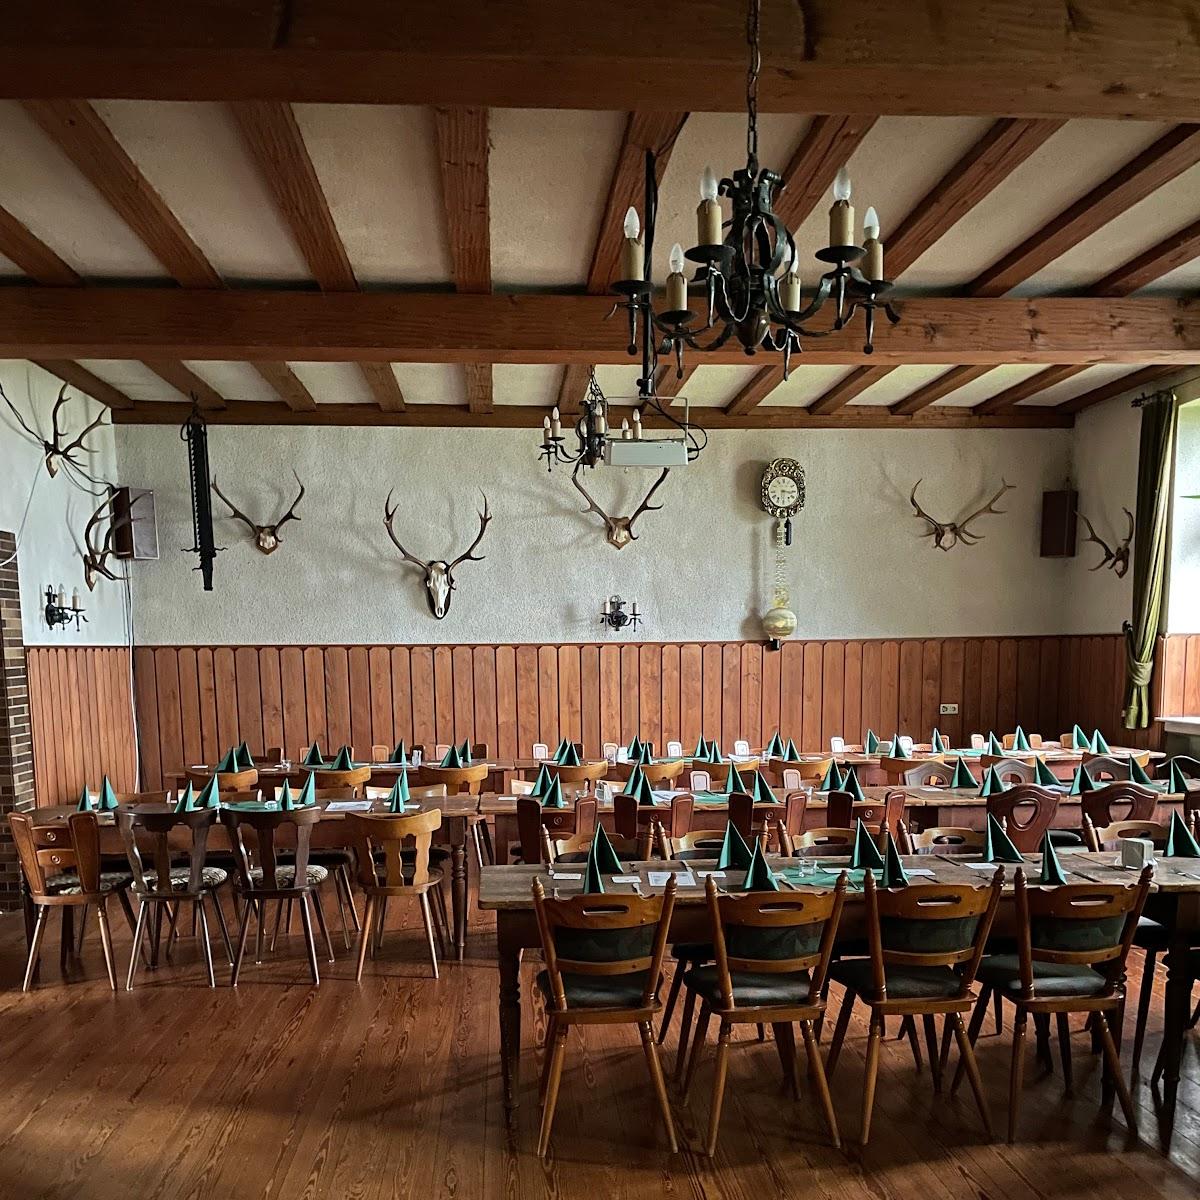 Restaurant "Gasthaus Franze" in Morshausen